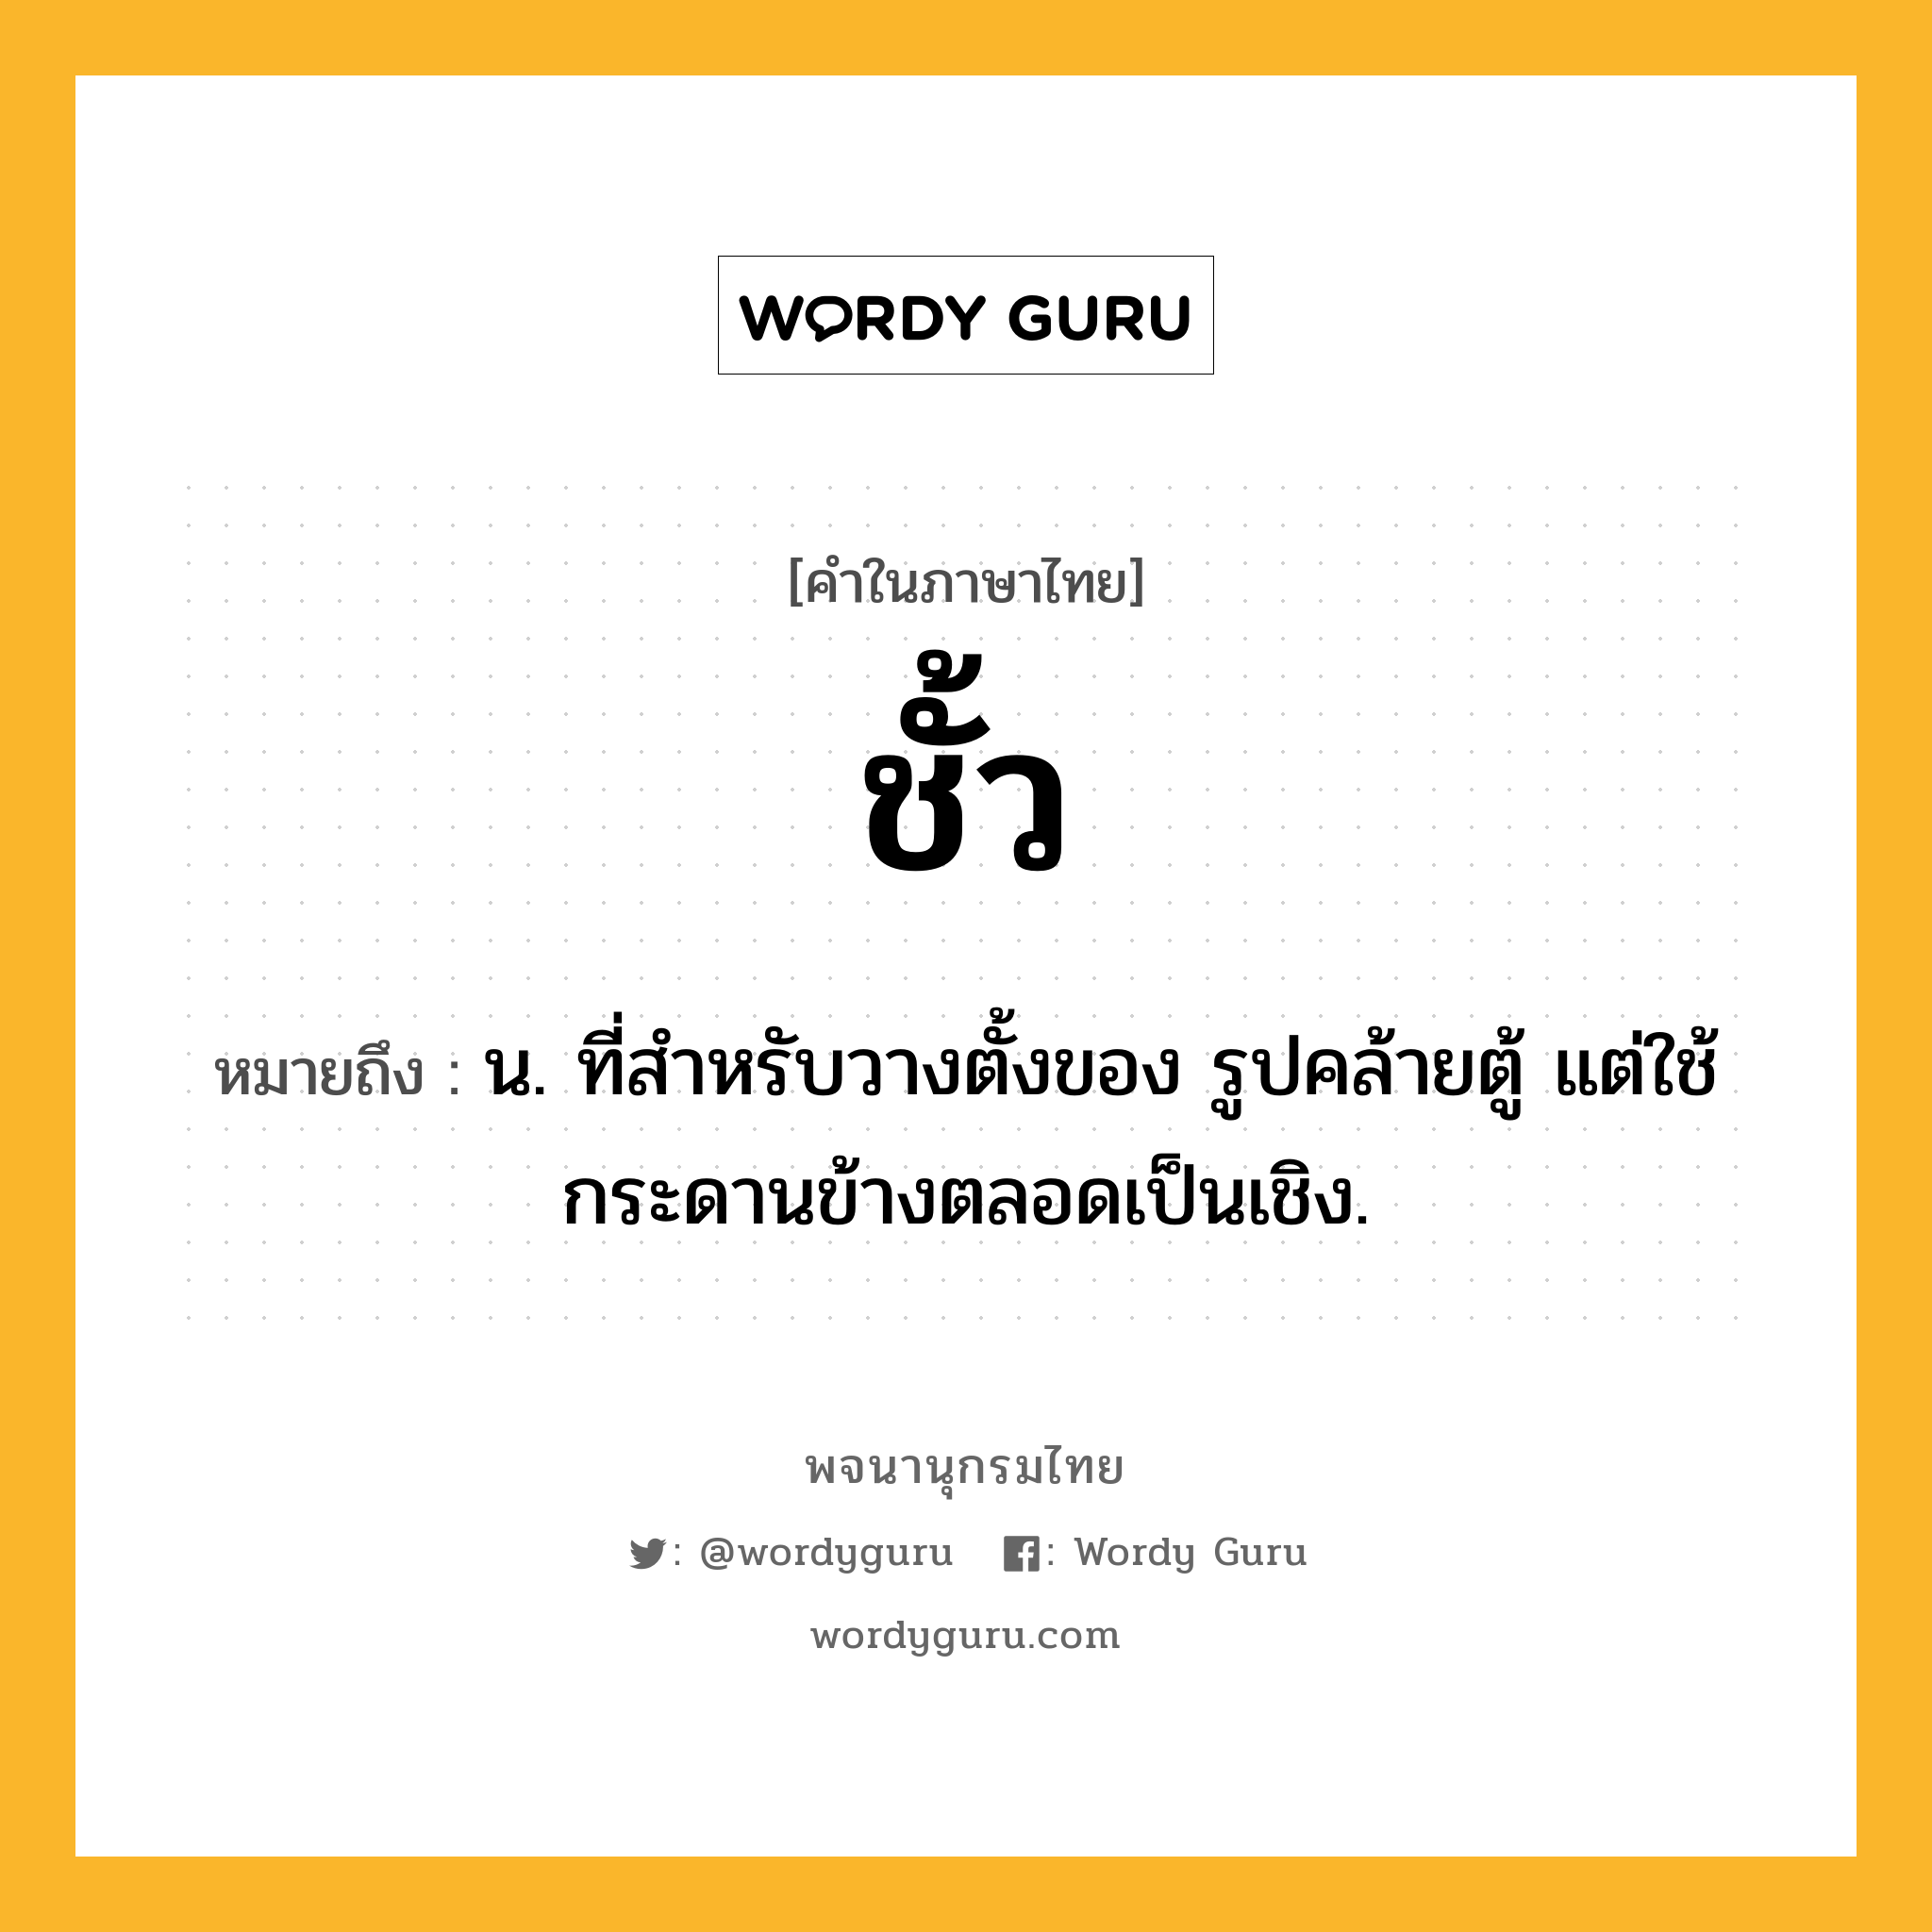 ชั้ว ความหมาย หมายถึงอะไร?, คำในภาษาไทย ชั้ว หมายถึง น. ที่สําหรับวางตั้งของ รูปคล้ายตู้ แต่ใช้กระดานข้างตลอดเป็นเชิง.